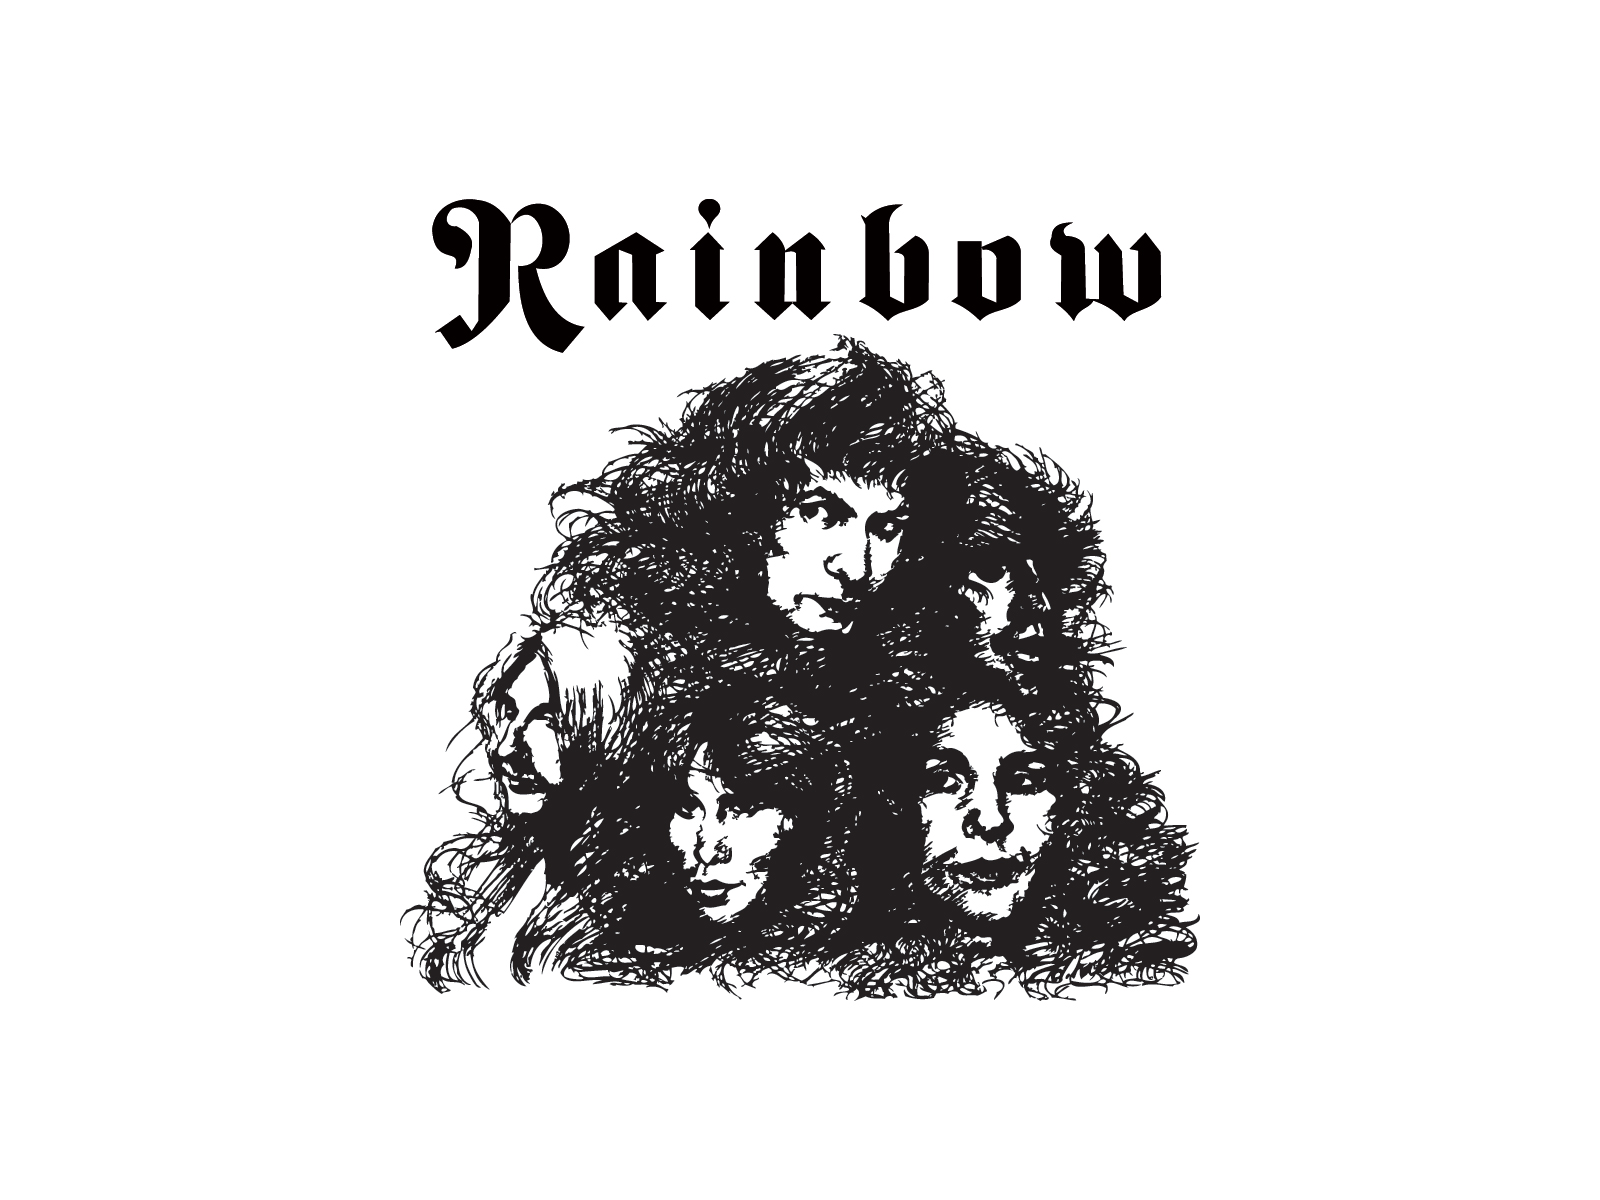 La banda de rock Rainbow saca nuevo DVD Monsters Of Rock - Live At Donington 1980 3